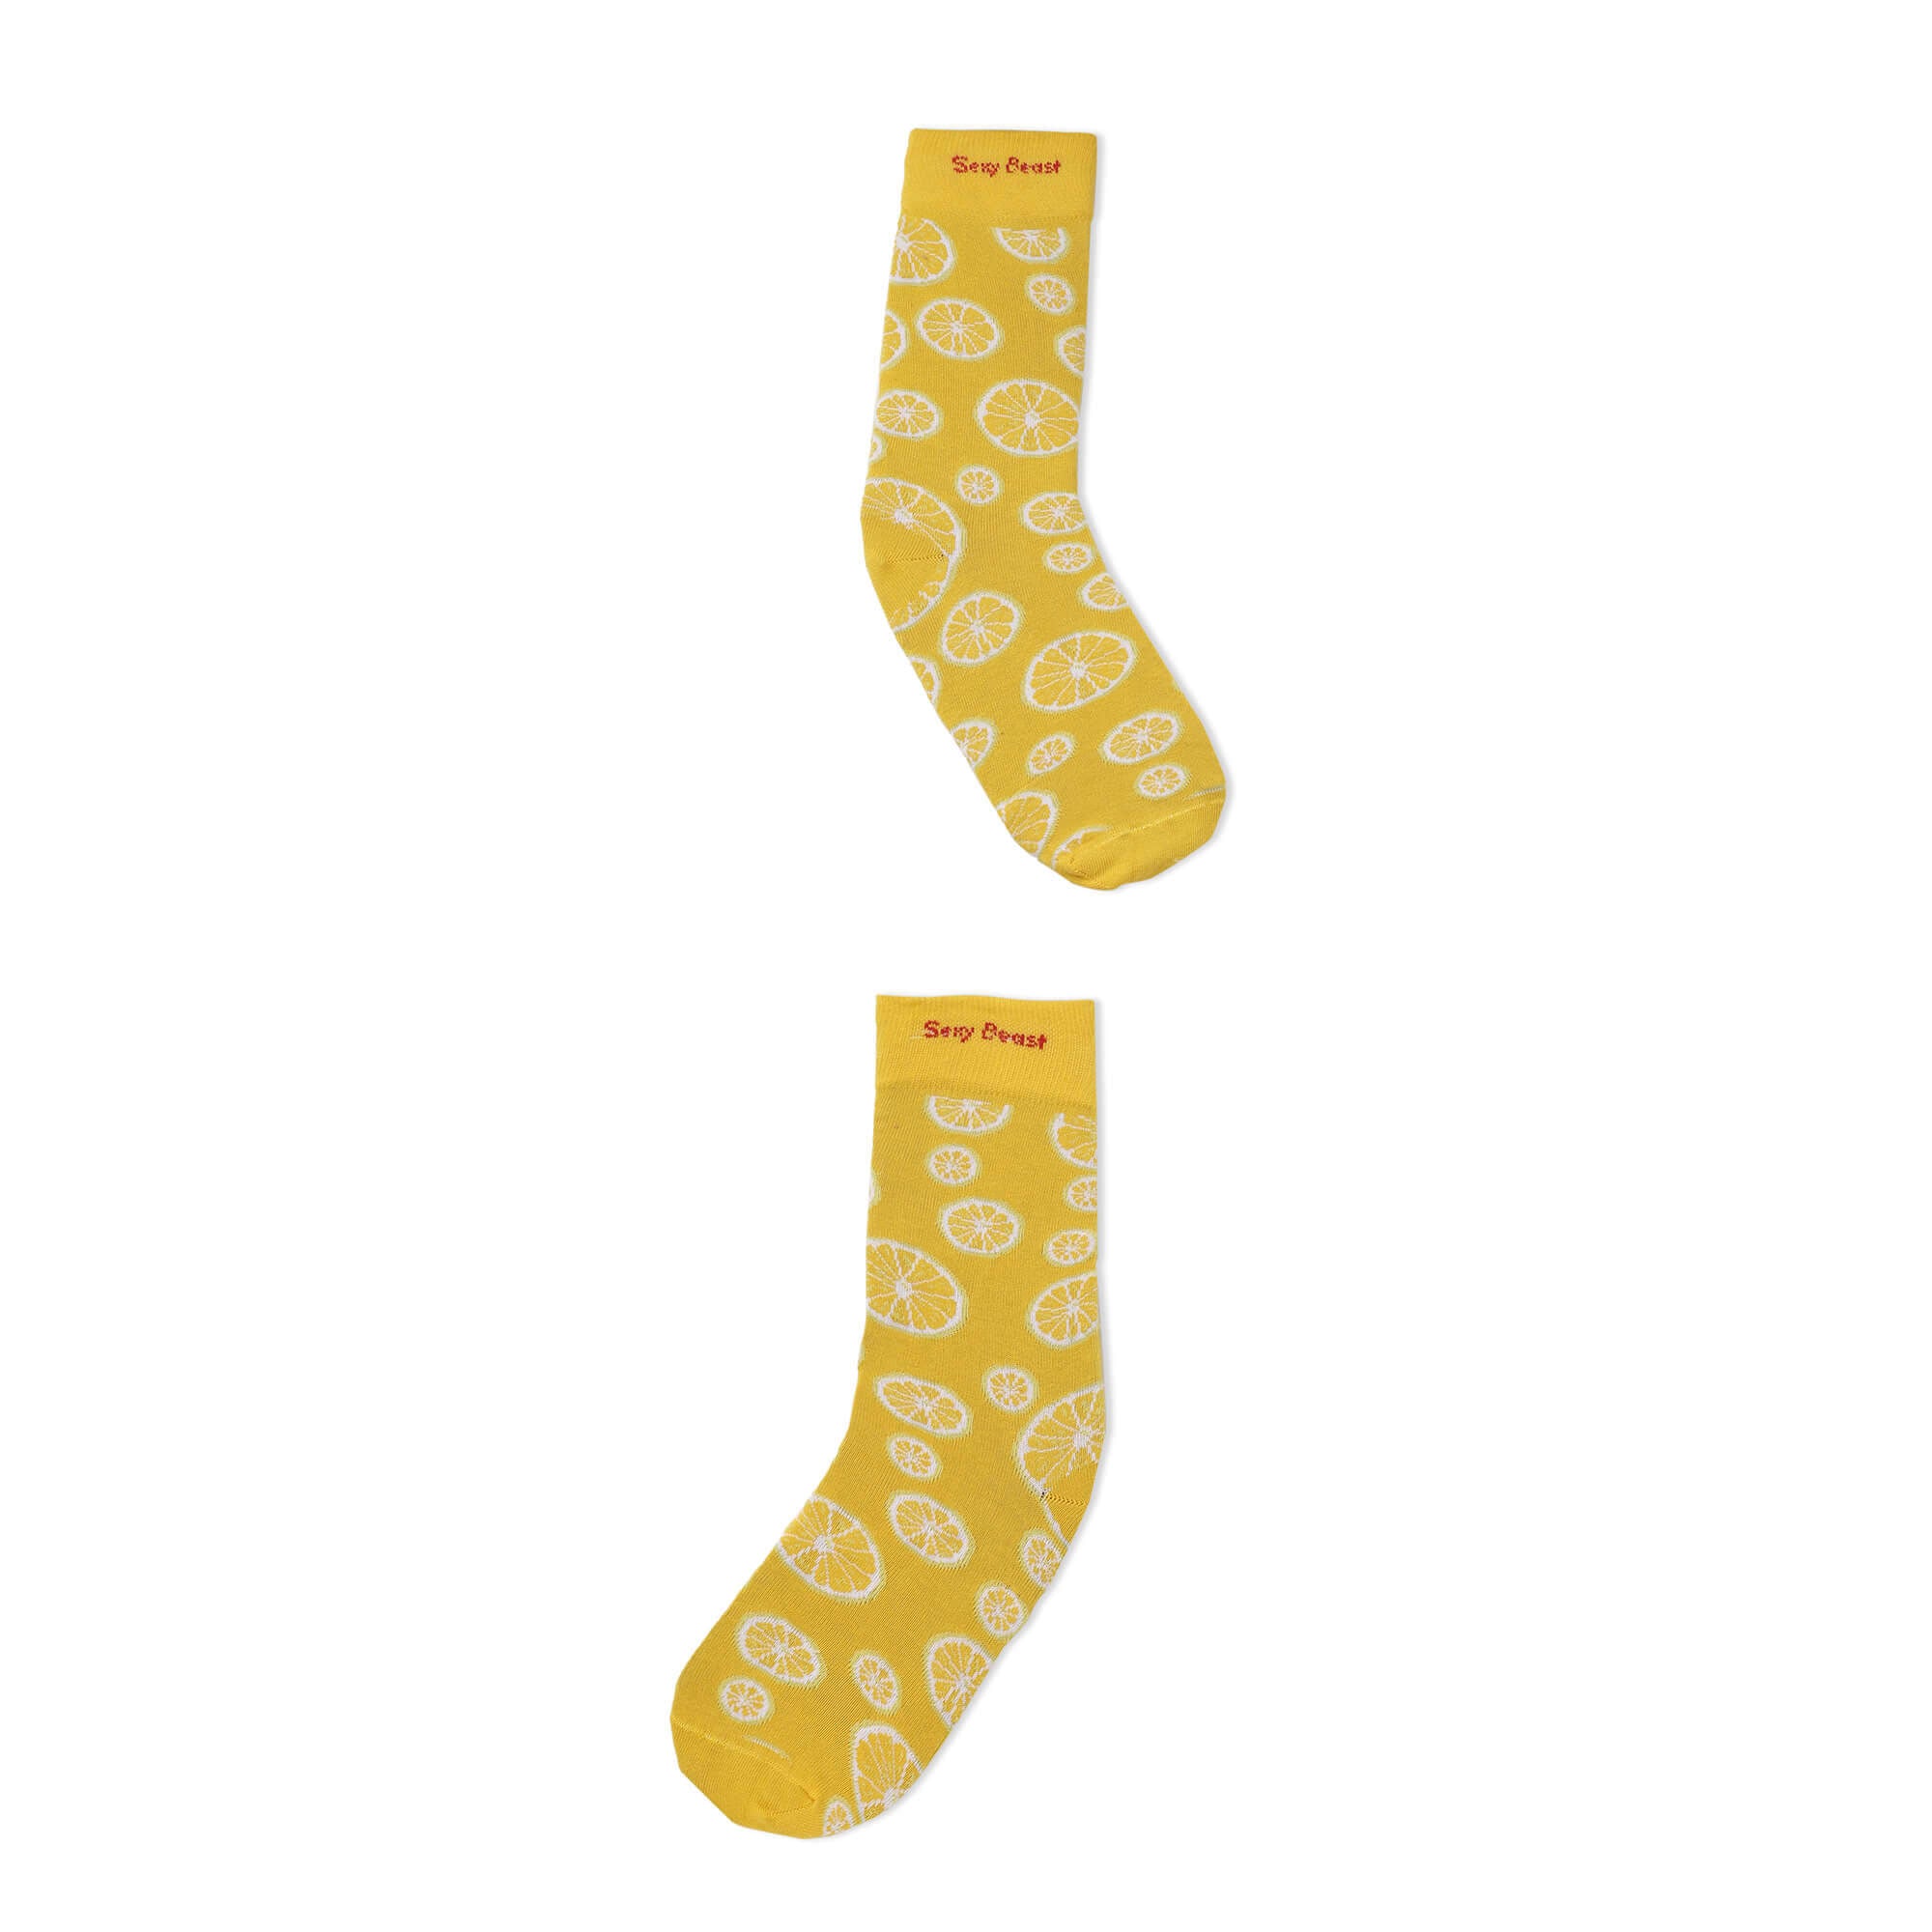 Funky Socks For Men